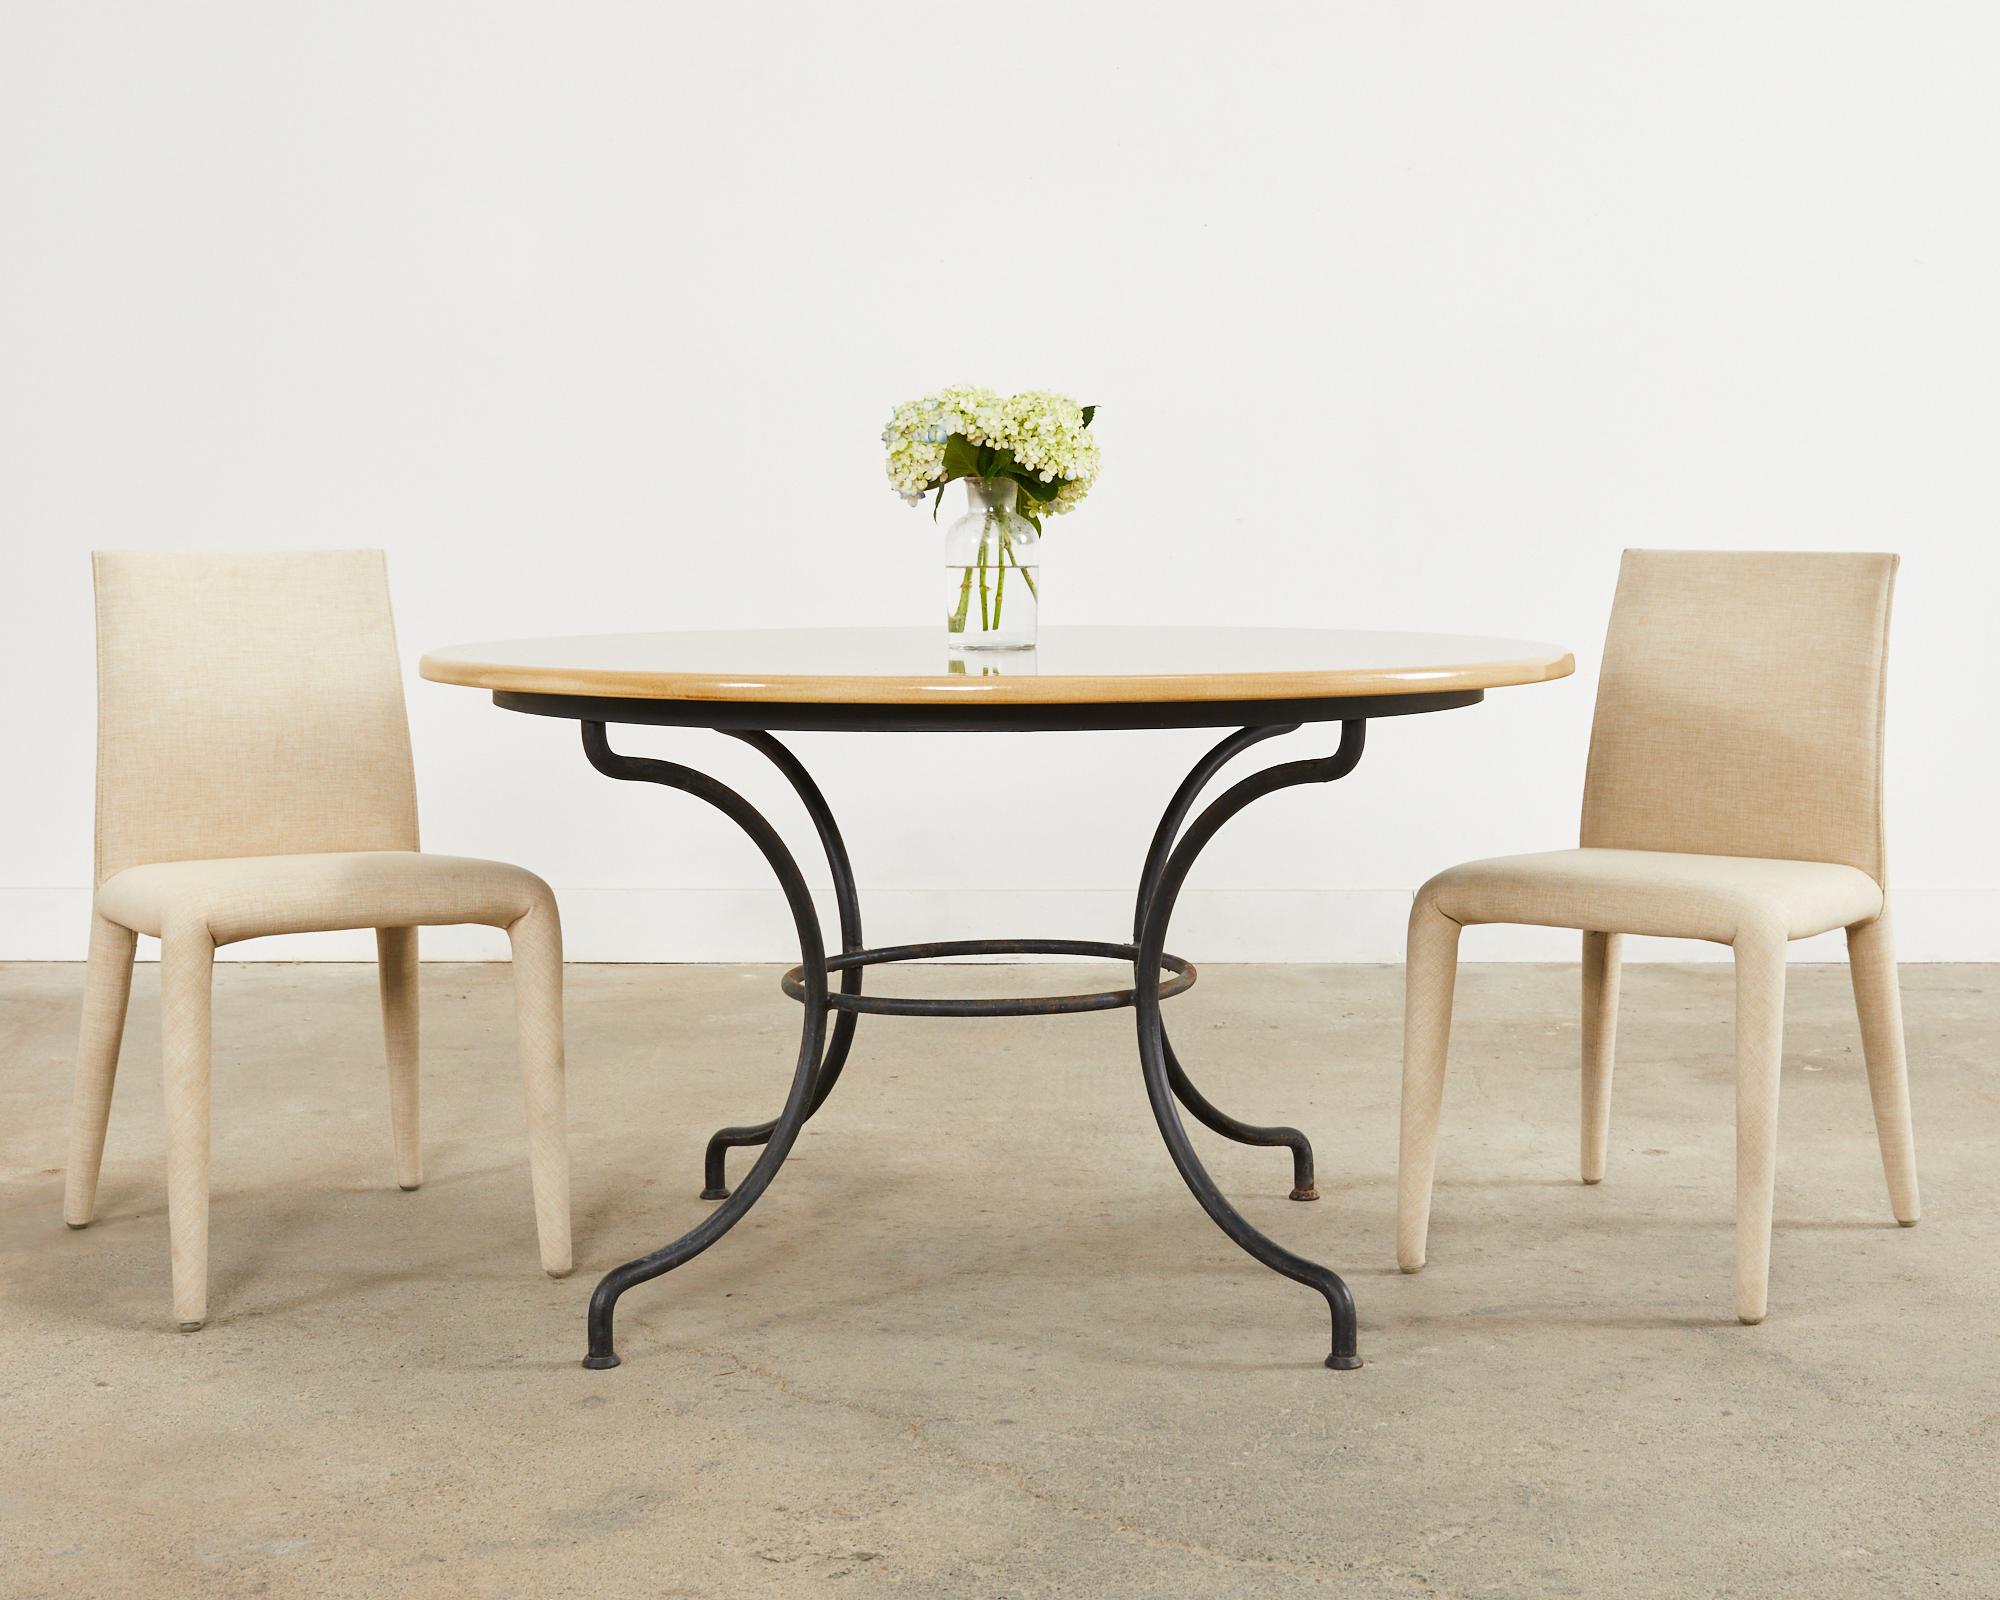 Ensemble élégant de quatre chaises de salle à manger italiennes conçues par Mario Bellini pour B and B Italia. Les chaises sont dotées d'un cadre en acier moulé et en mousse et d'une housse en tissu amovible qui s'ajuste comme un beau costume